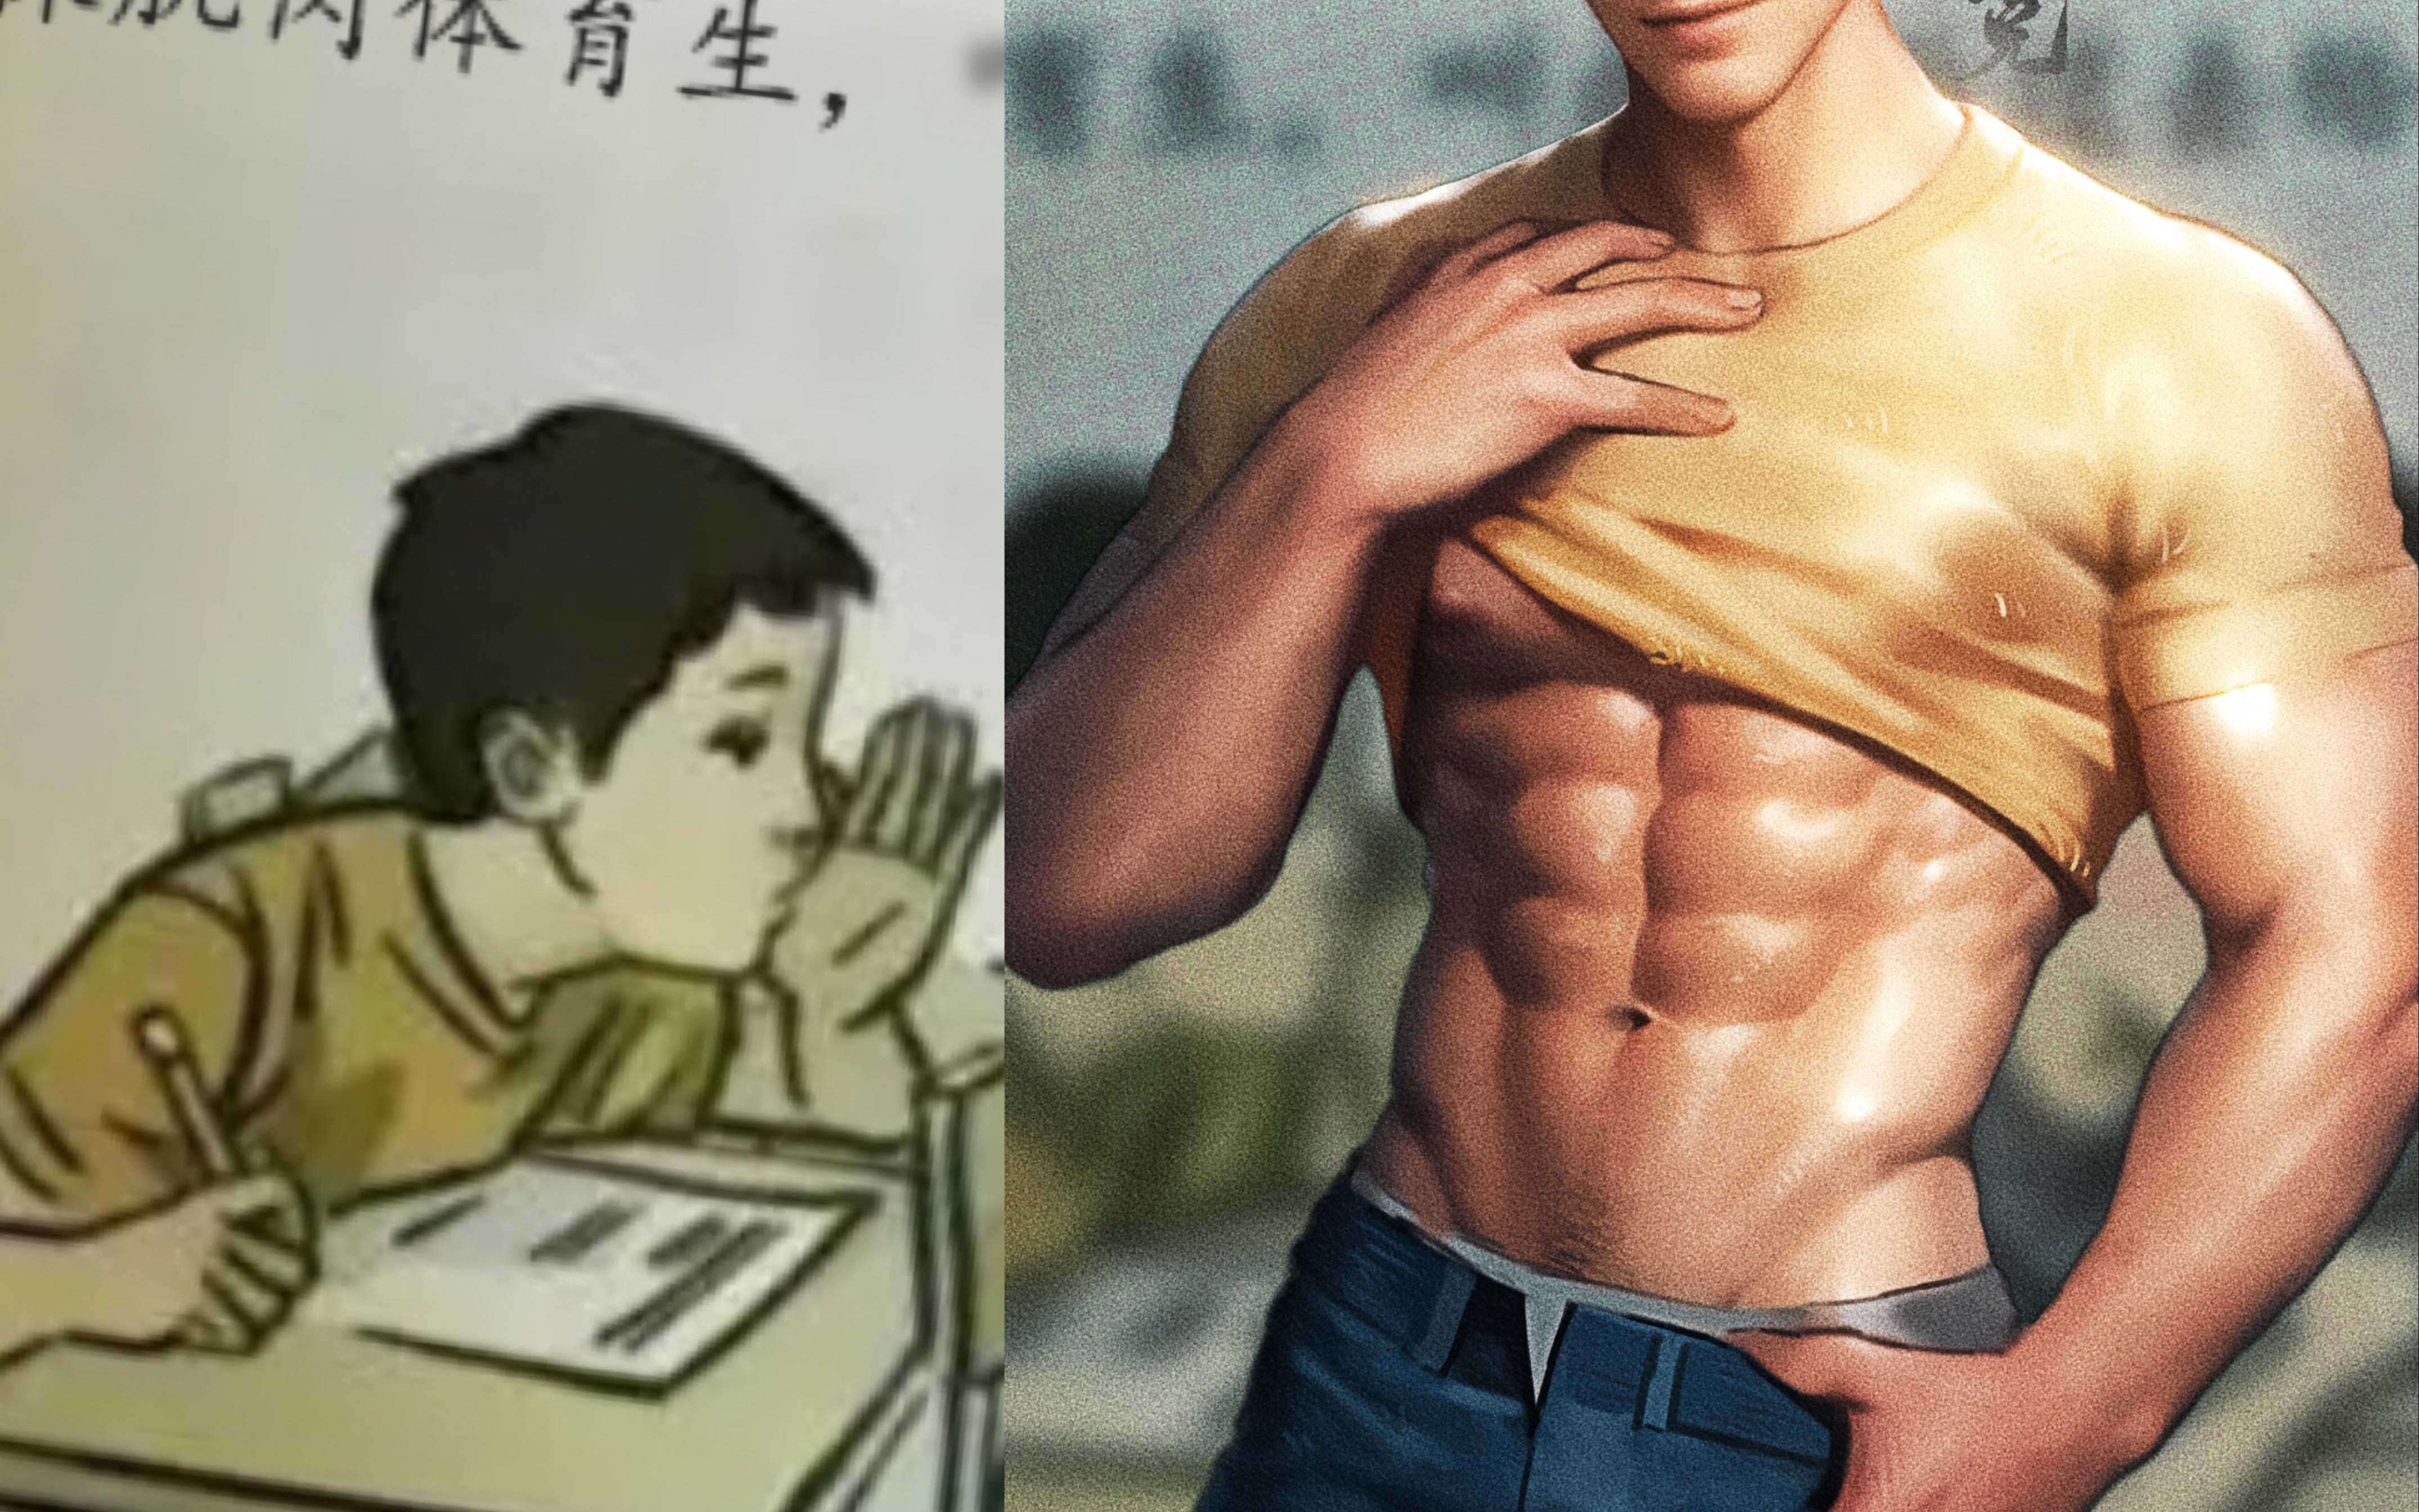 【板绘/ 川哥梗图】“小川同学是腹肌体育生”